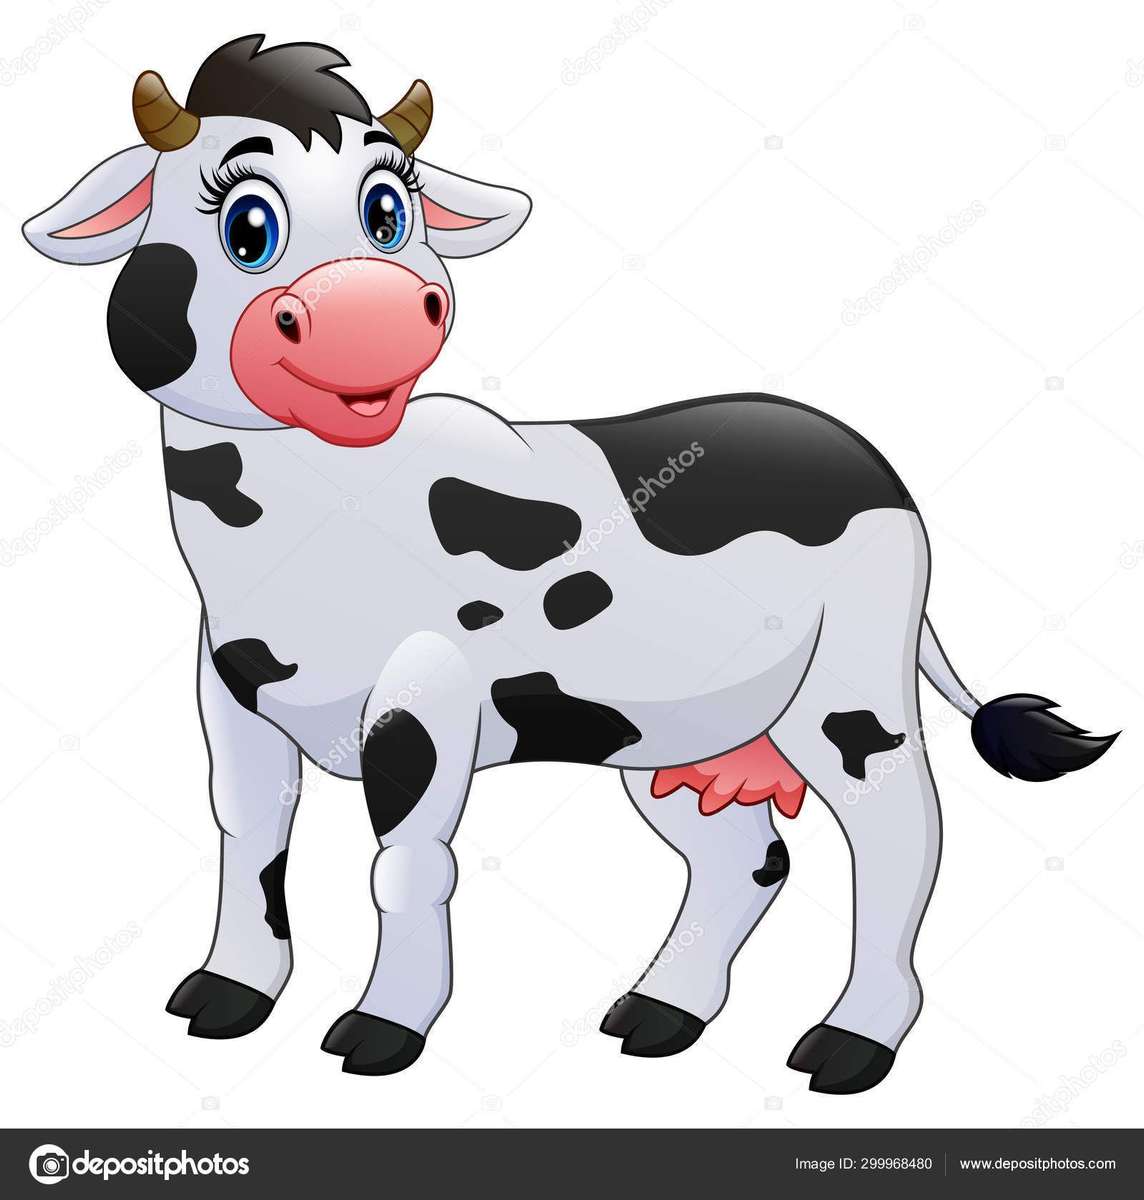 krowa maluje puzzle online